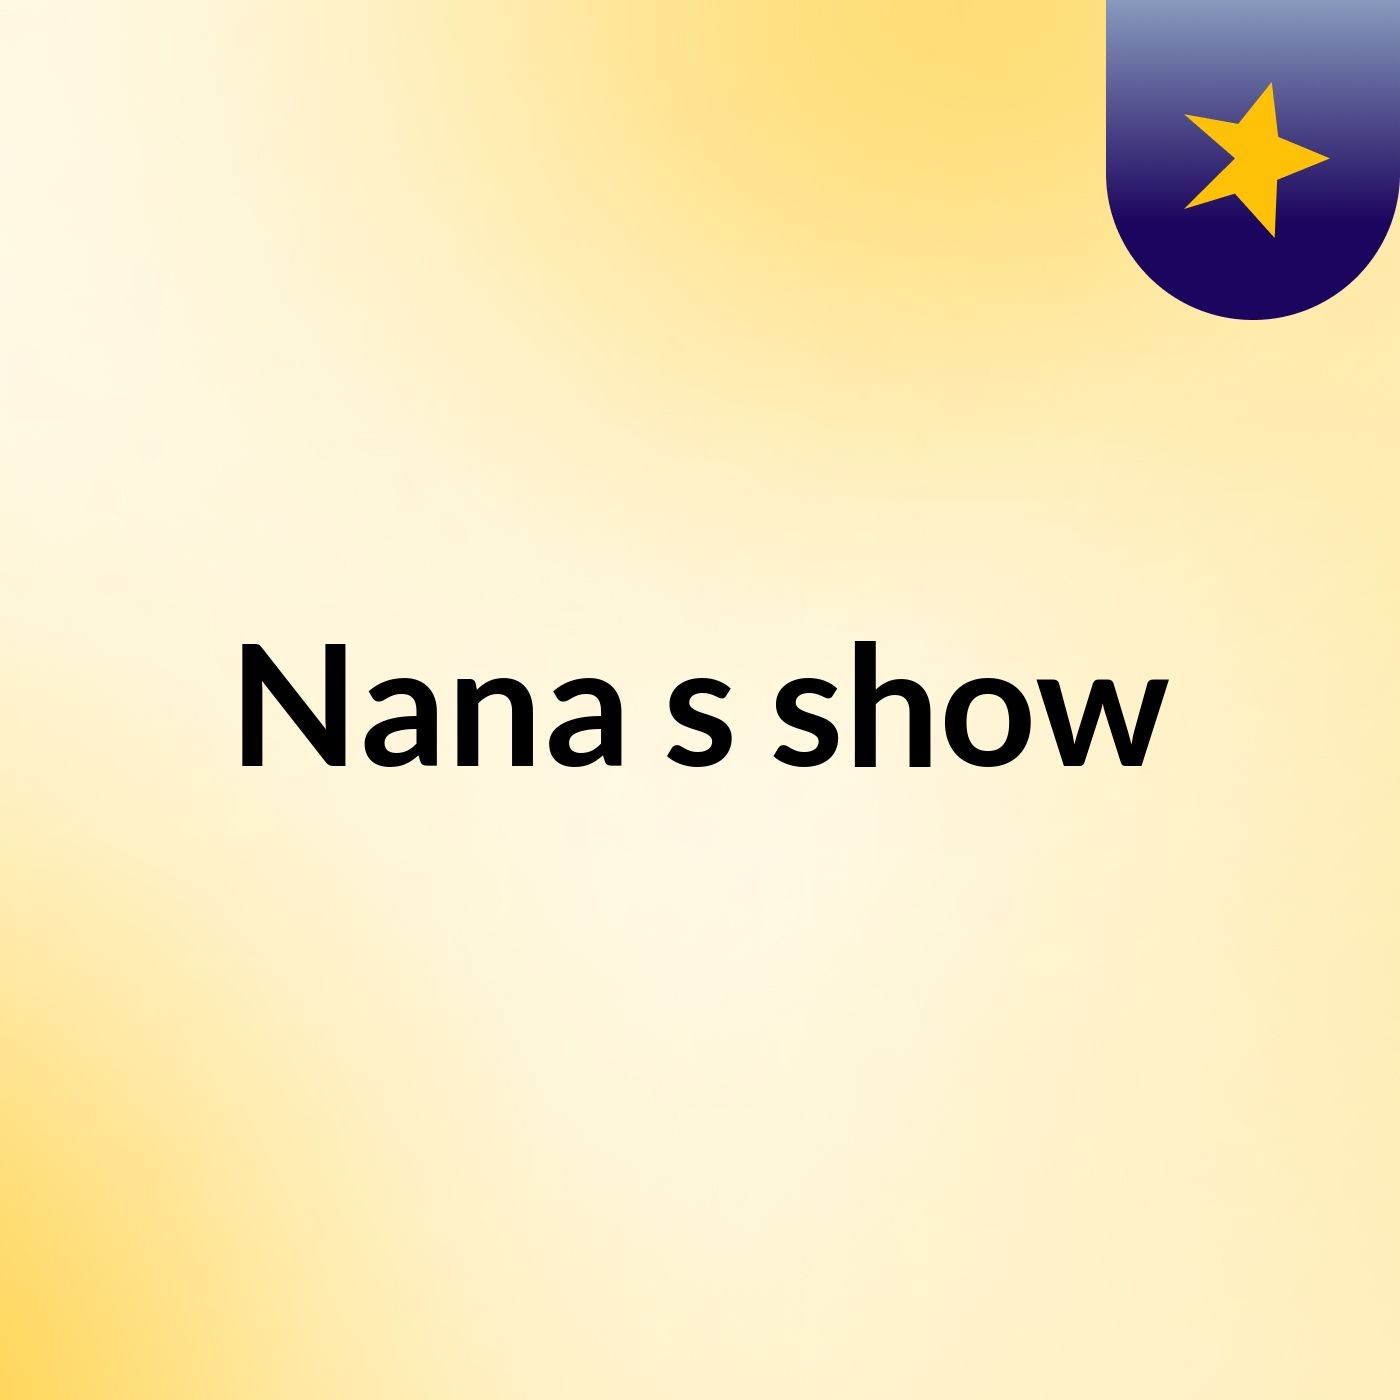 Nana's show